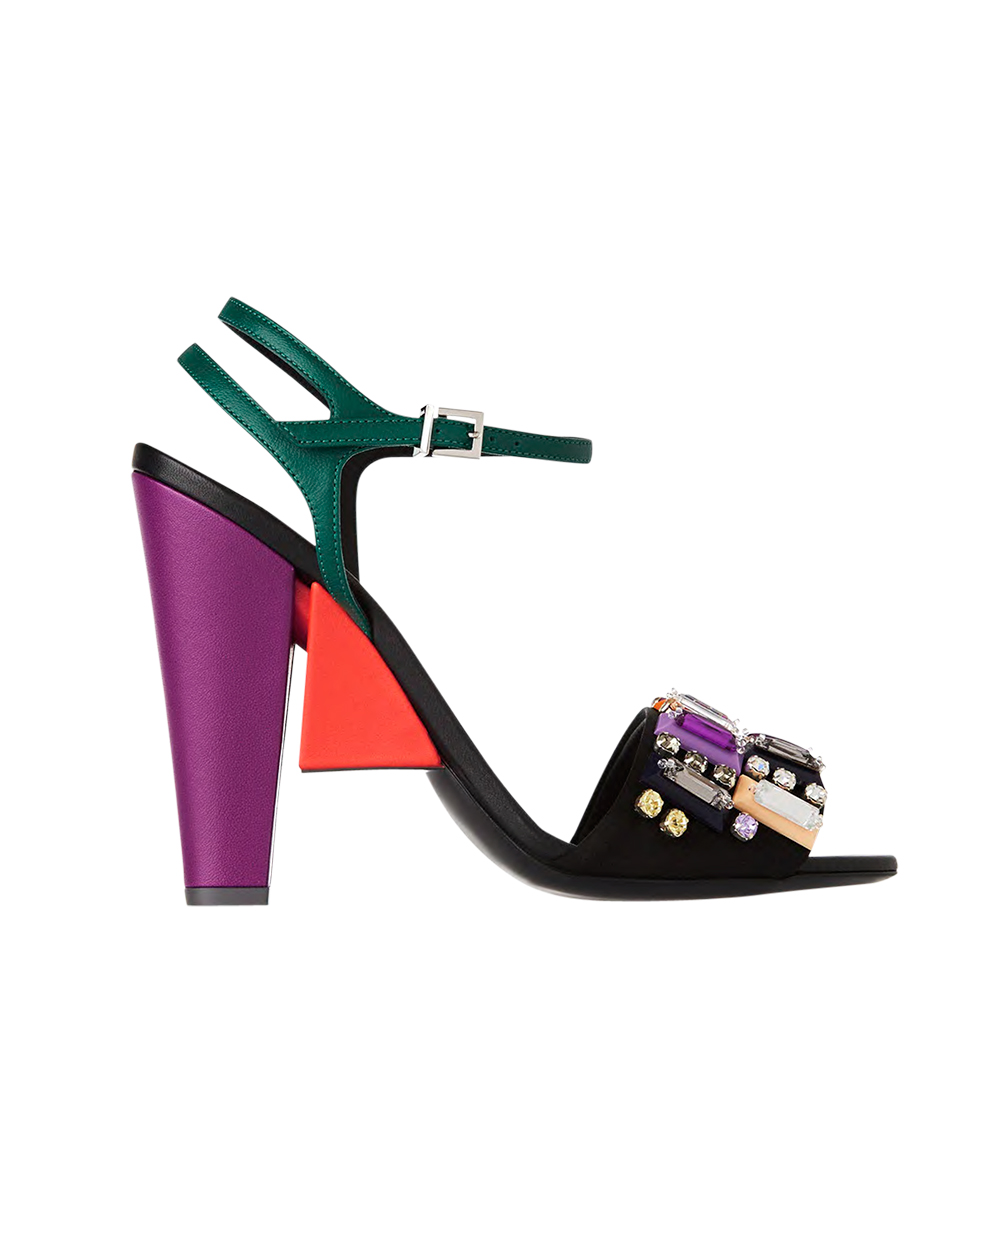 Fendi heels, $2266, from Net-a-Porter